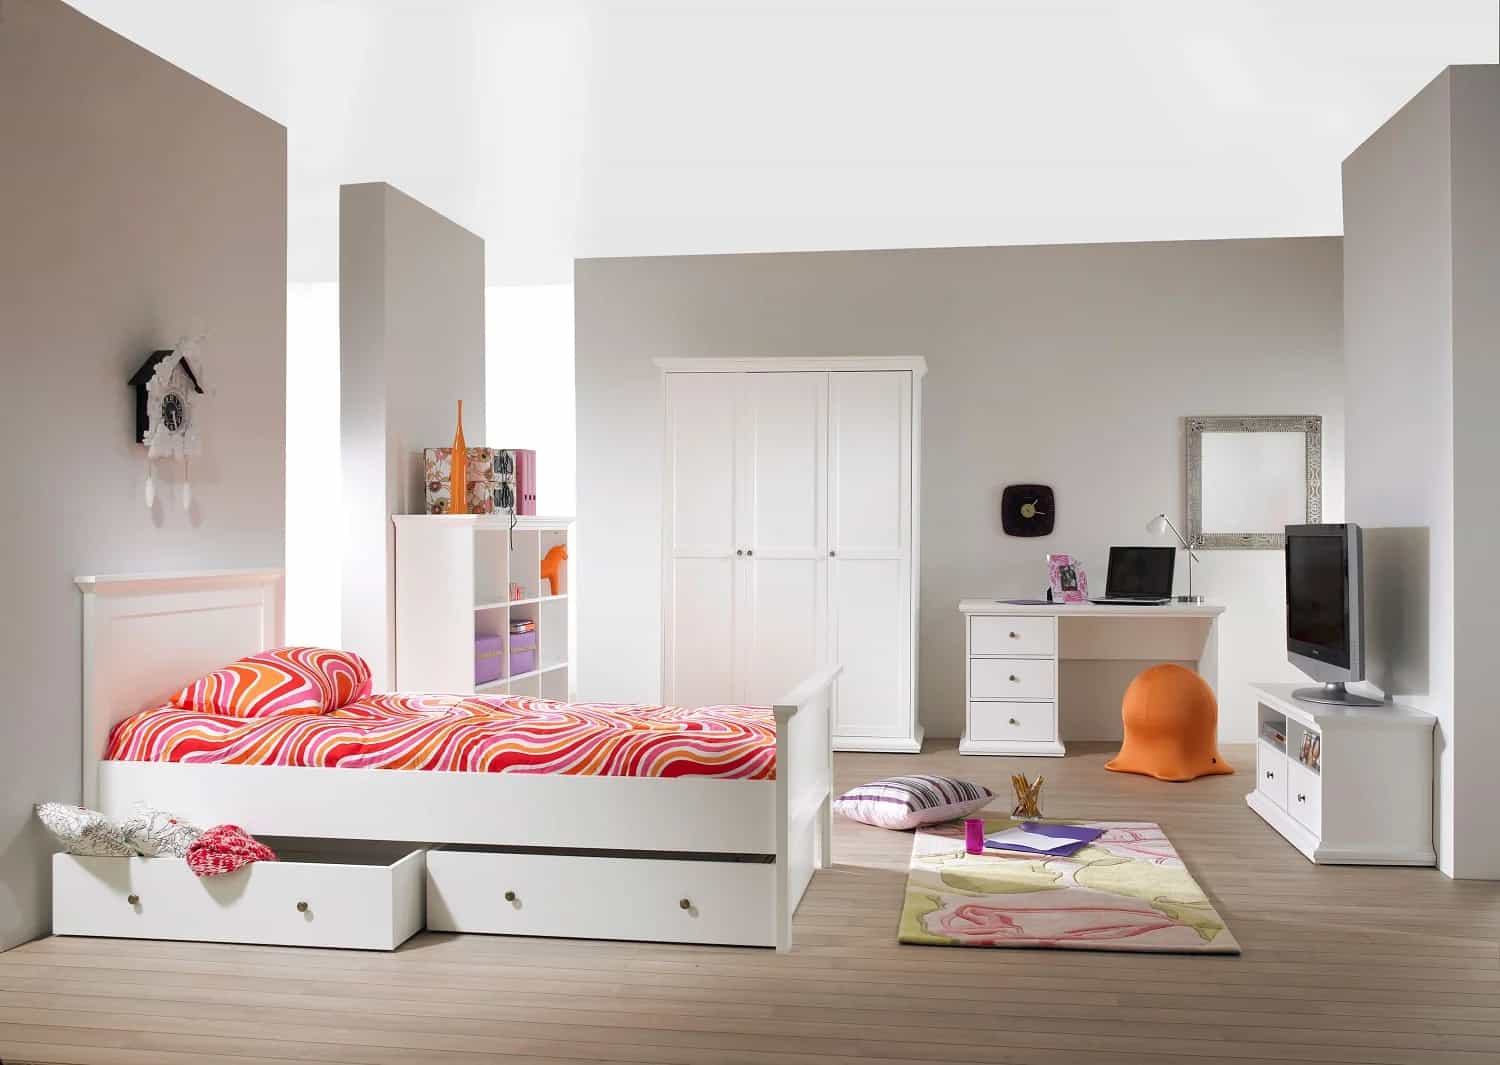 السرير الفردي؛ خشب MDF لنوم مريح الابعاد وفقا لمساحة الغرفة Bed